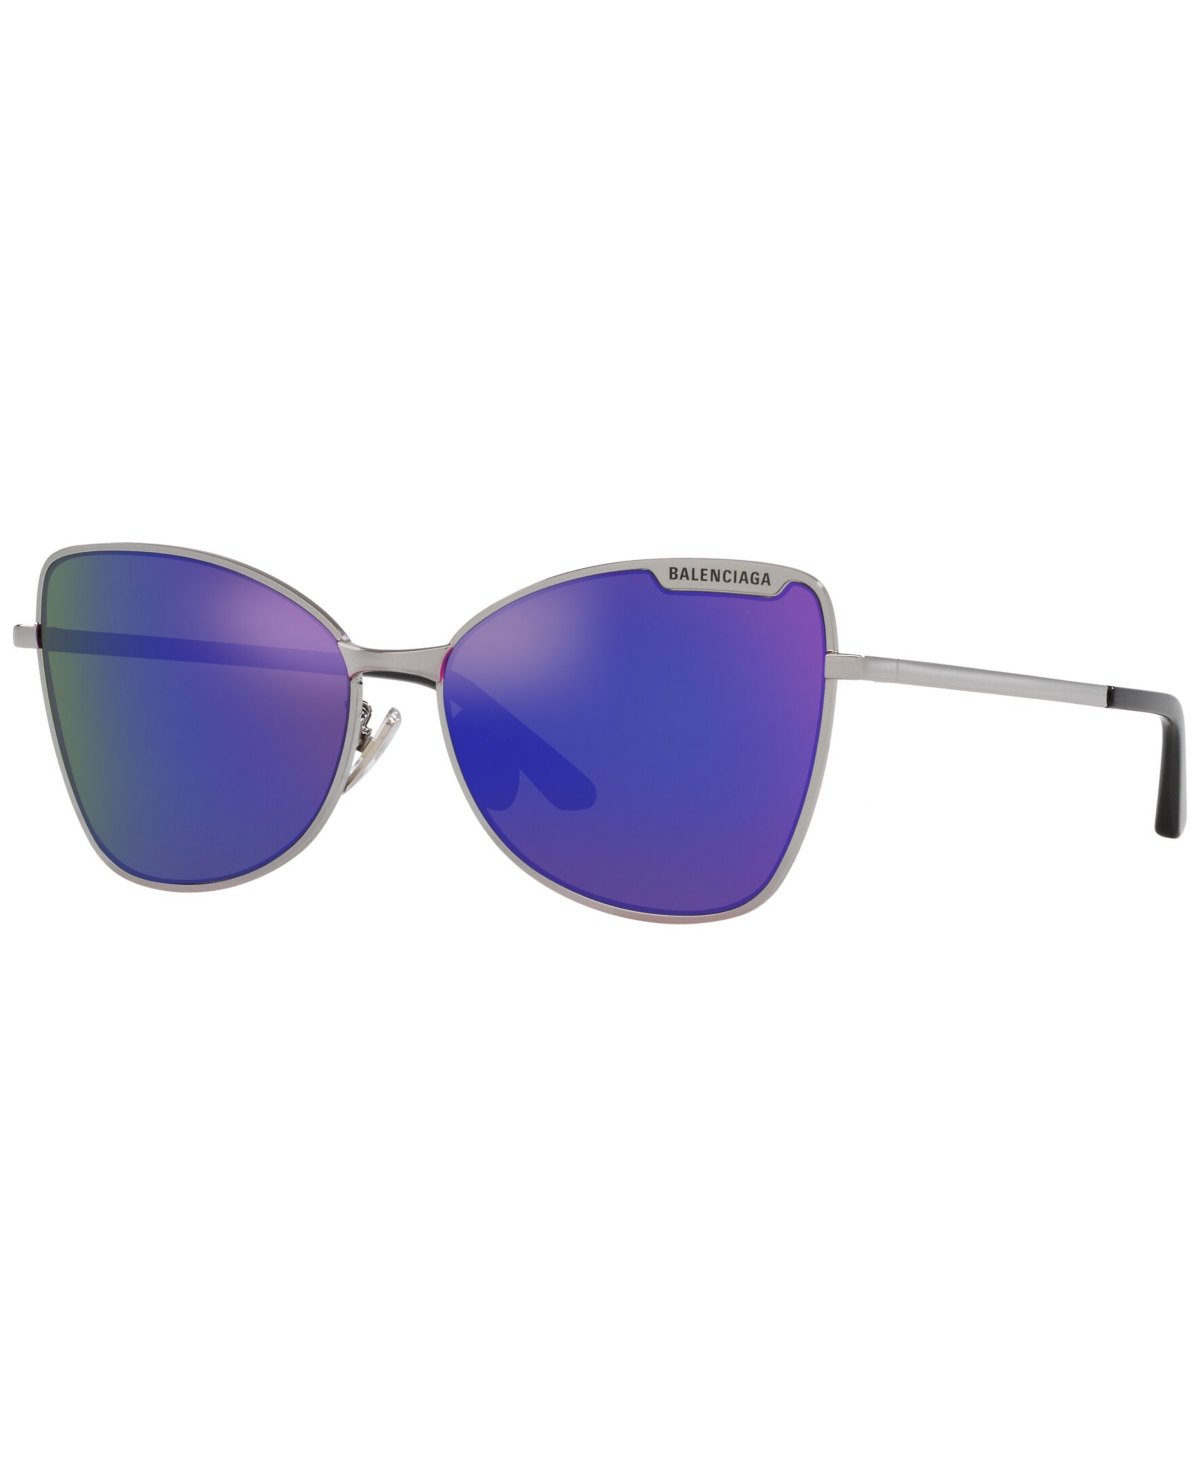 Women's Sunglasses, BB0278S - Silver